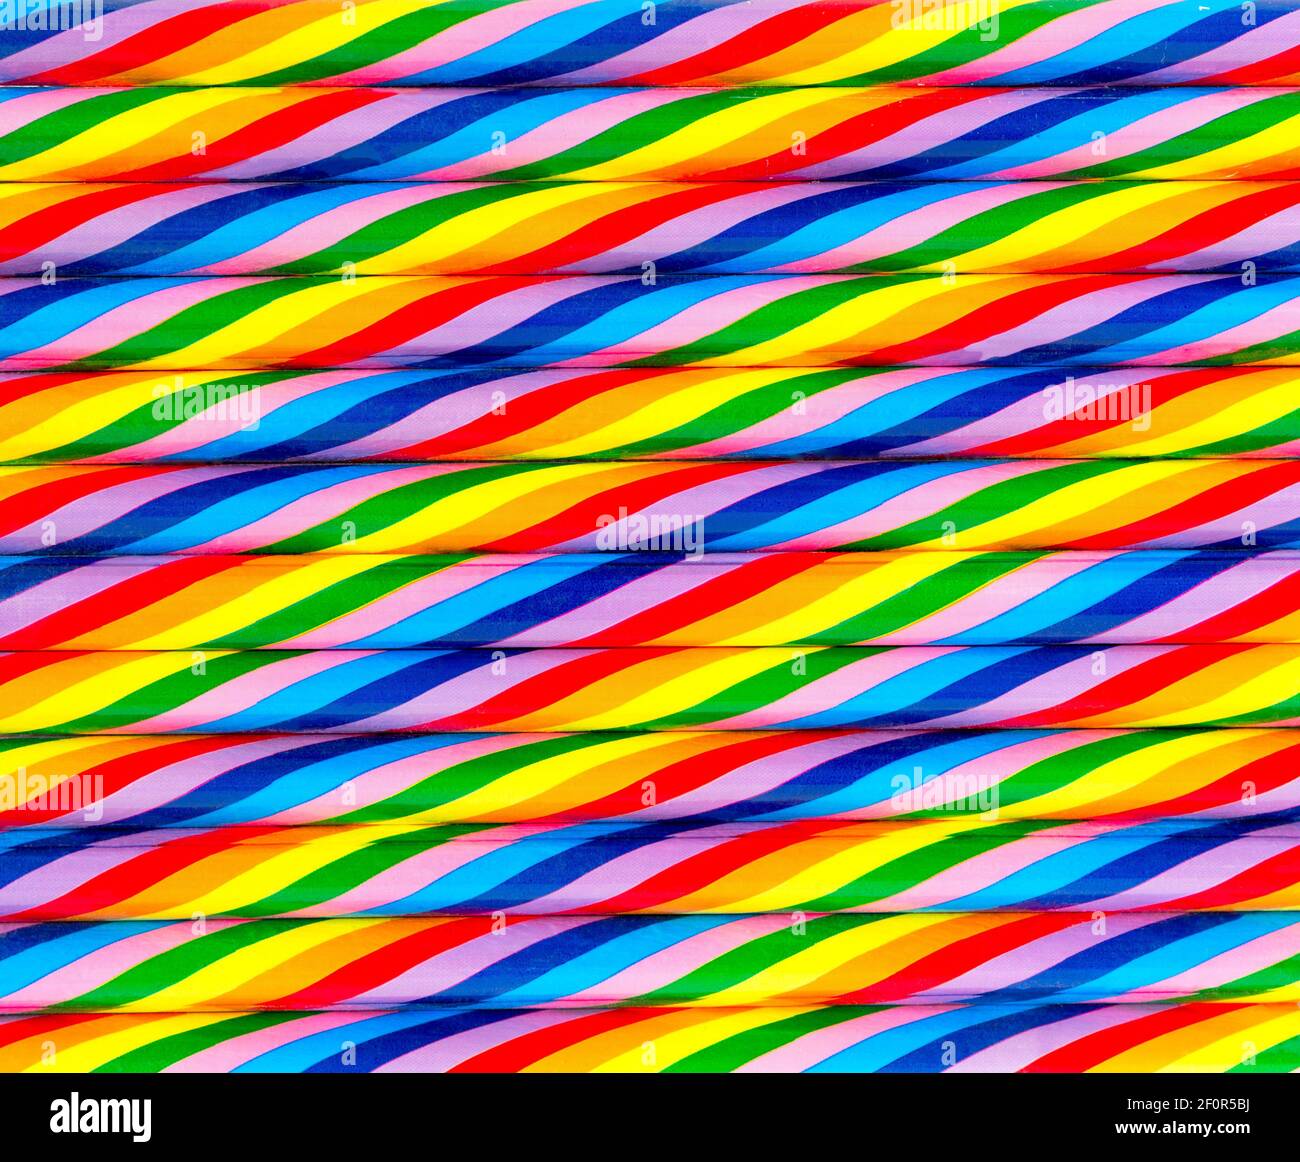 Lebendiger abstrakter Hintergrund in Farbe. Mehrfarbig gestreifter Hintergrund von Bleistiften. Nahtlose bunte gestreifte Hintergründe. Stockfoto